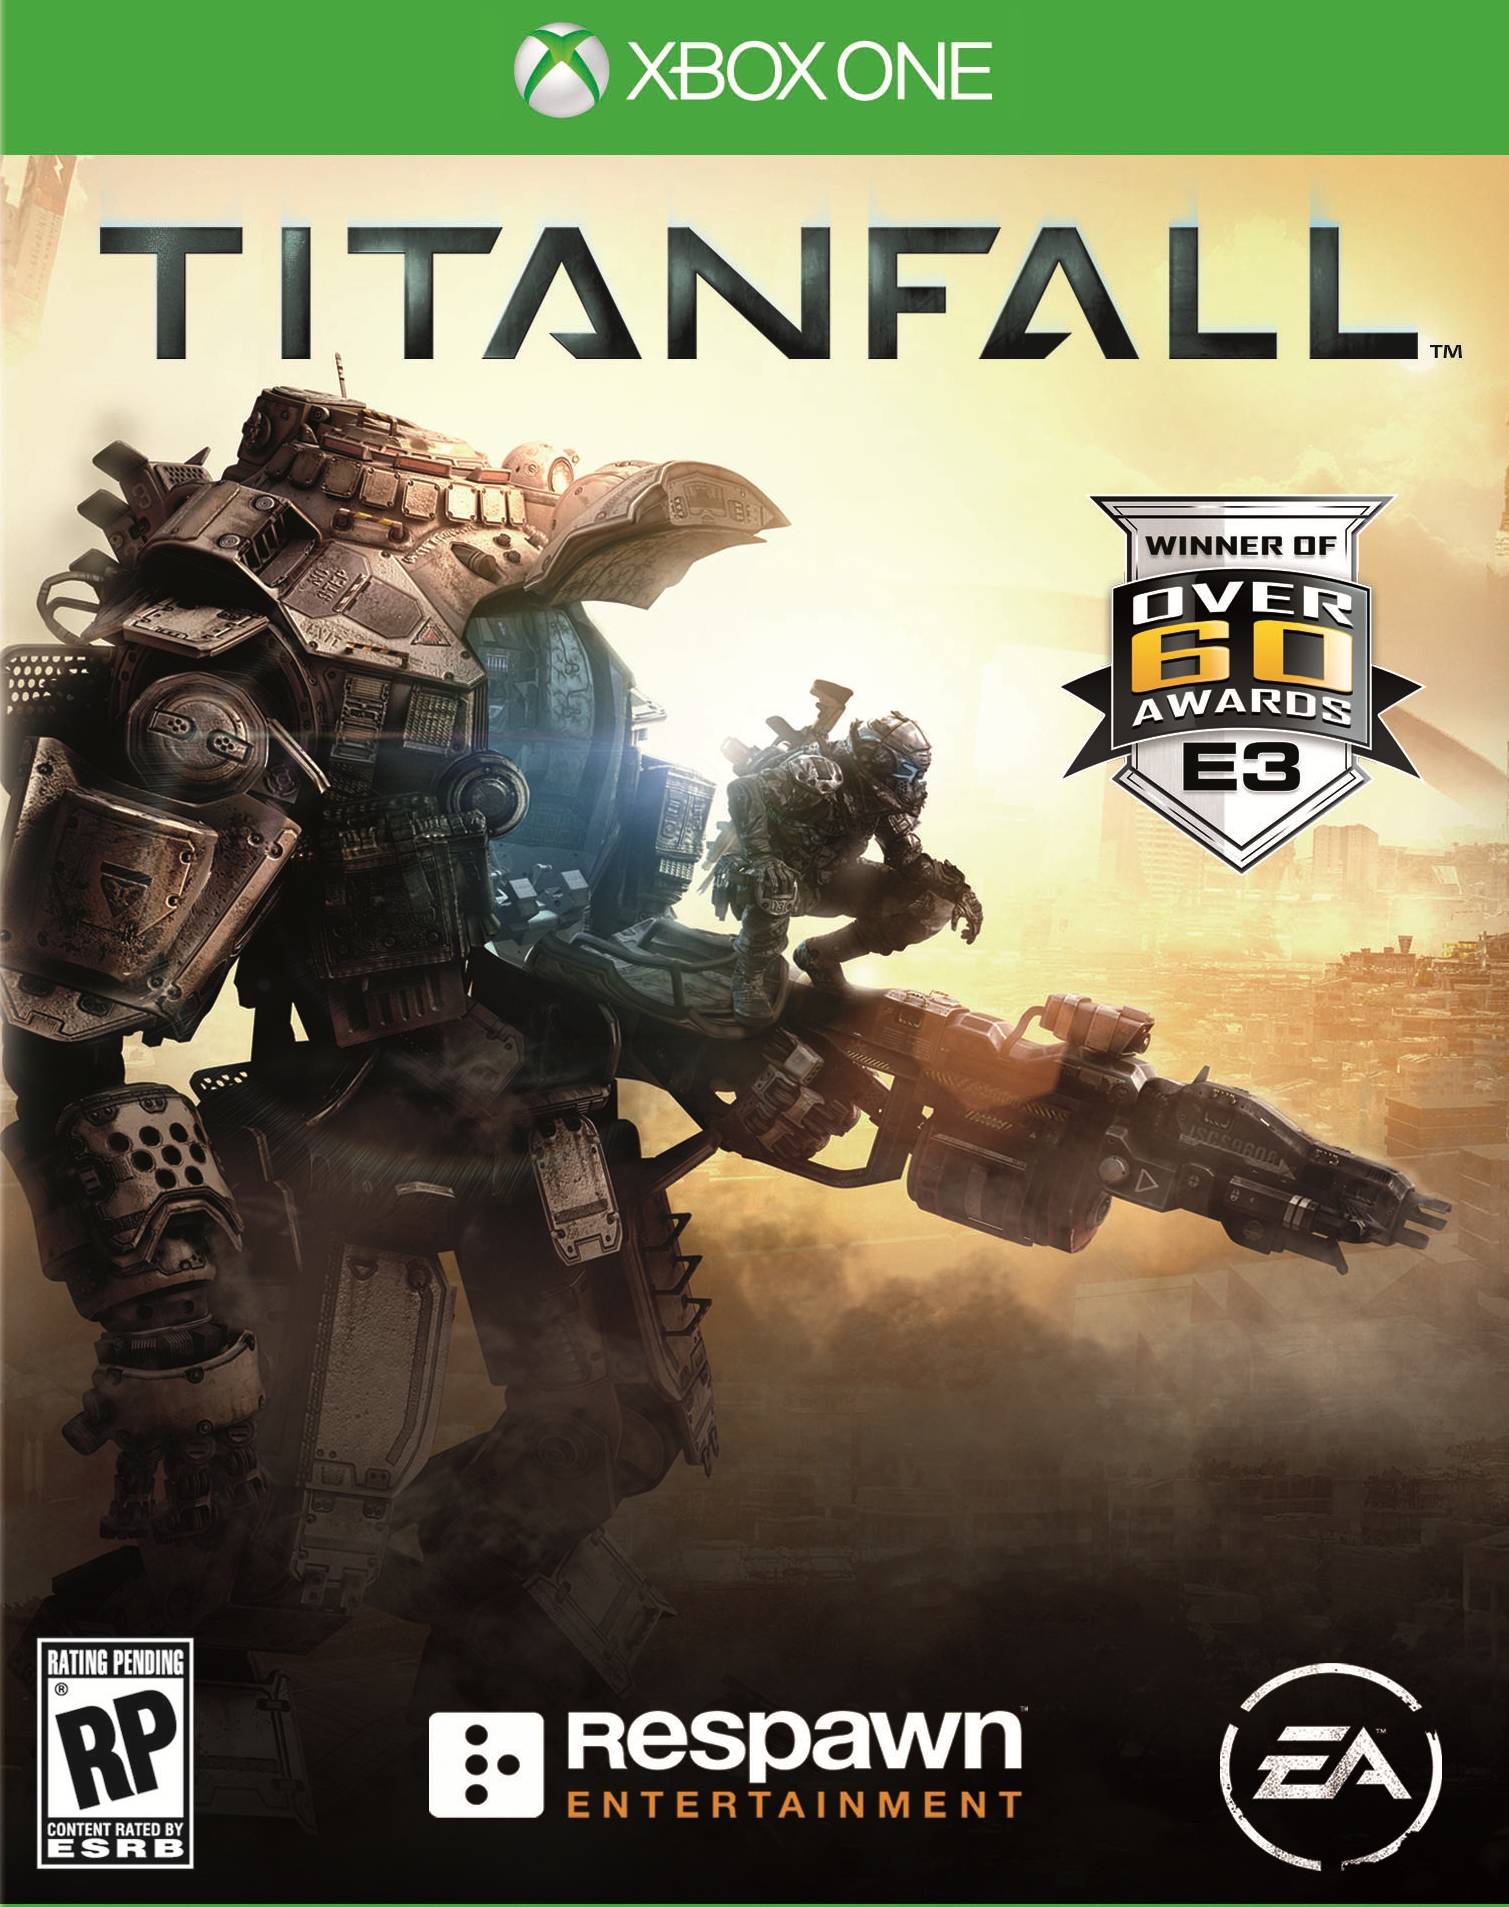 Titanfall [Xbox One, русская версия]